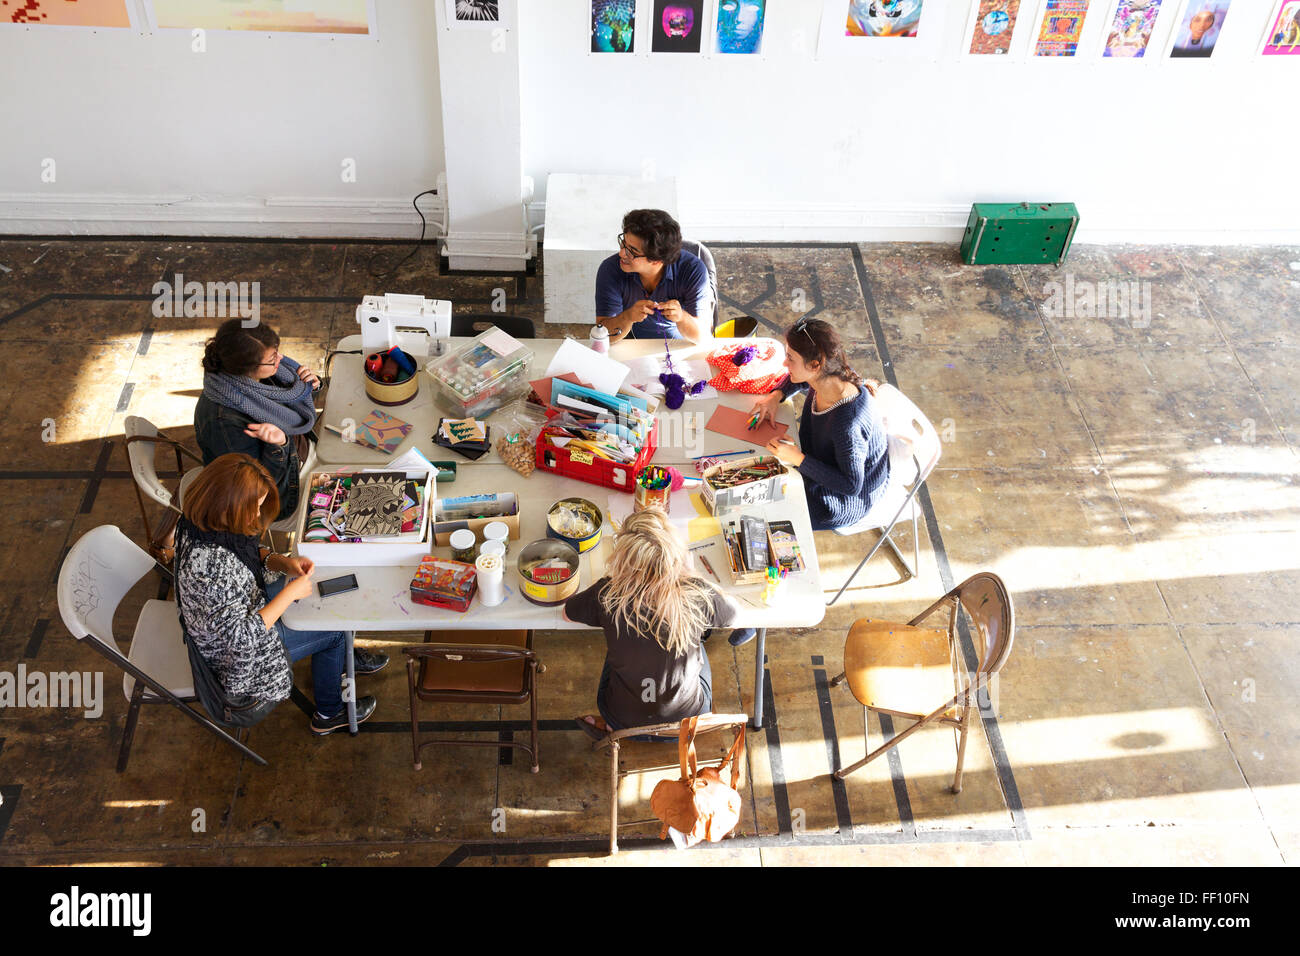 Fünf Personen an einem Tisch mit dem Handwerk Lieferungen in einen hellen, sonnigen Raum, jeder arbeitet an seinem Projekt ruhig sitzen. Stockfoto